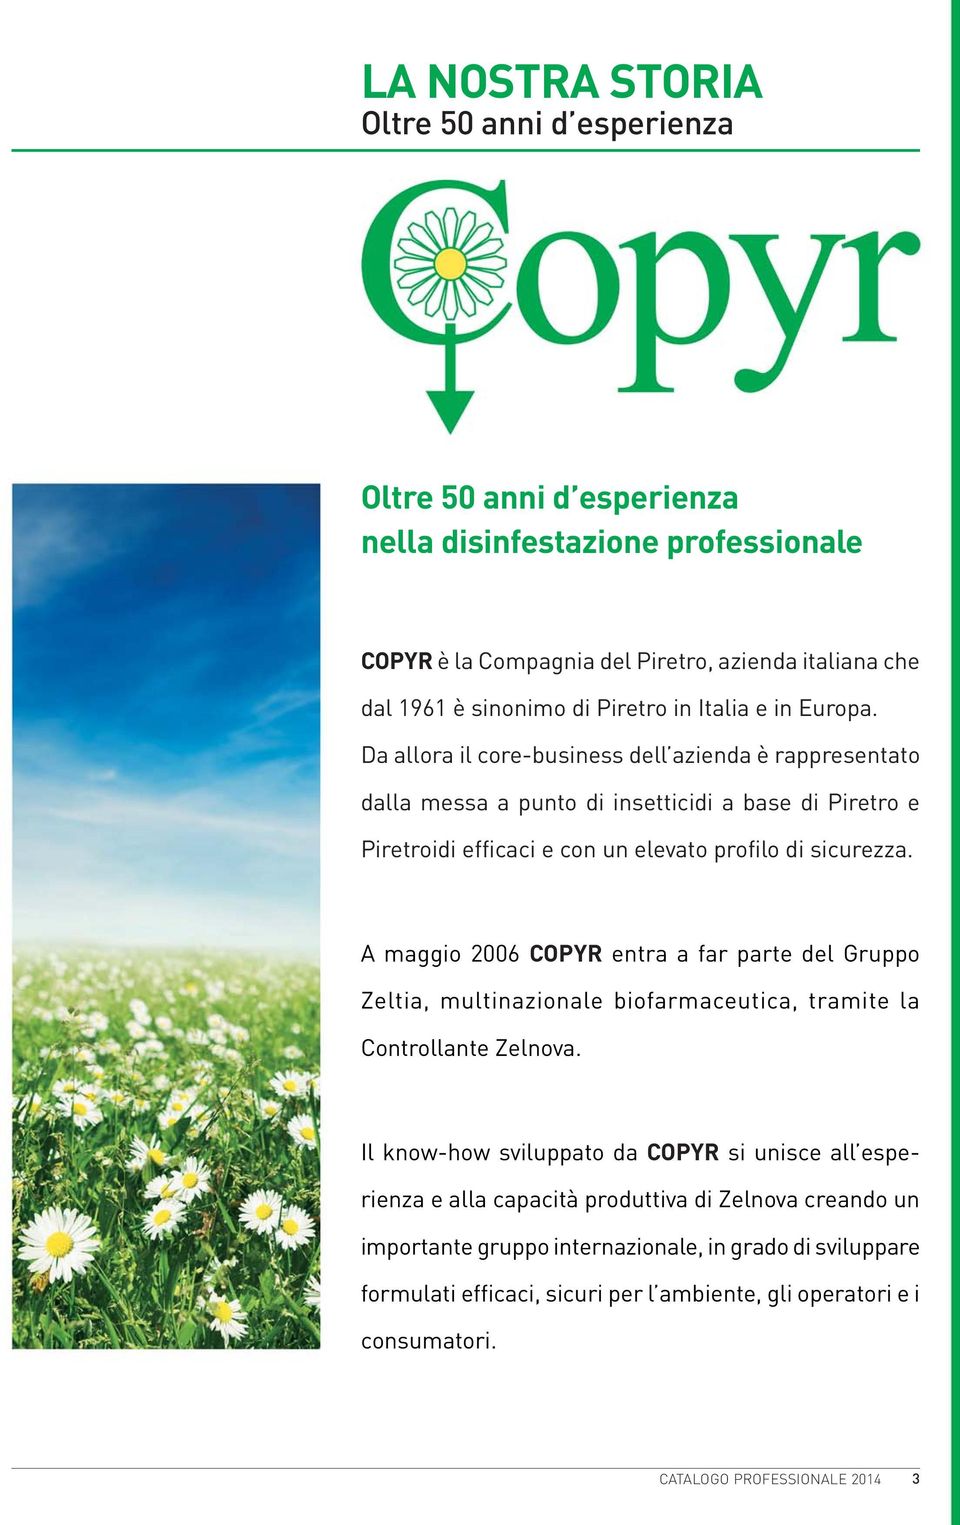 A maggio 2006 COPYR entra a far parte del Gruppo Zeltia, multinazionale biofarmaceutica, tramite la Controllante Zelnova.